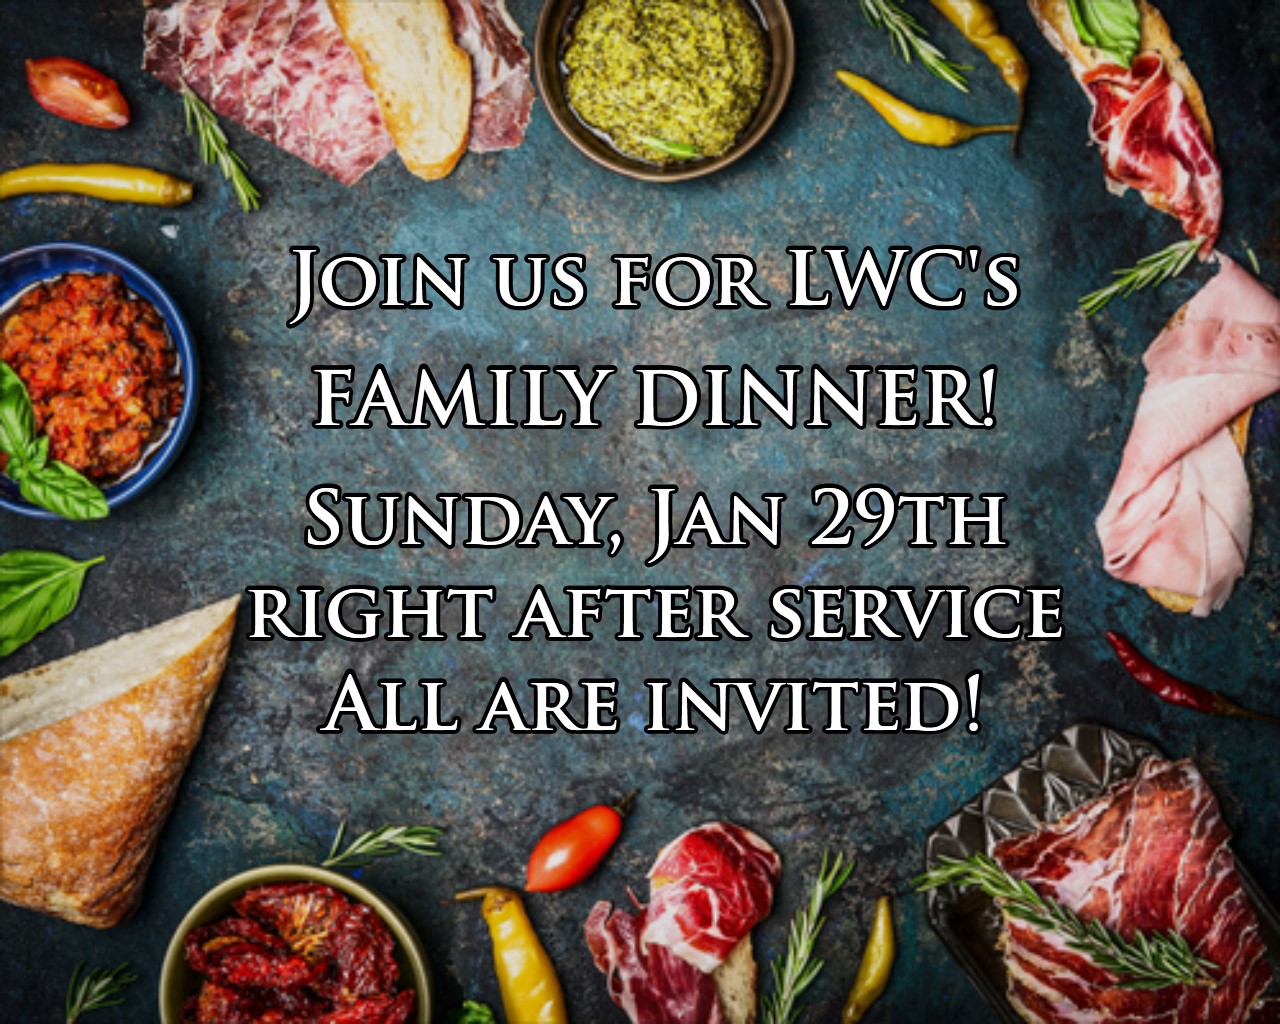 LWC Family Dinner